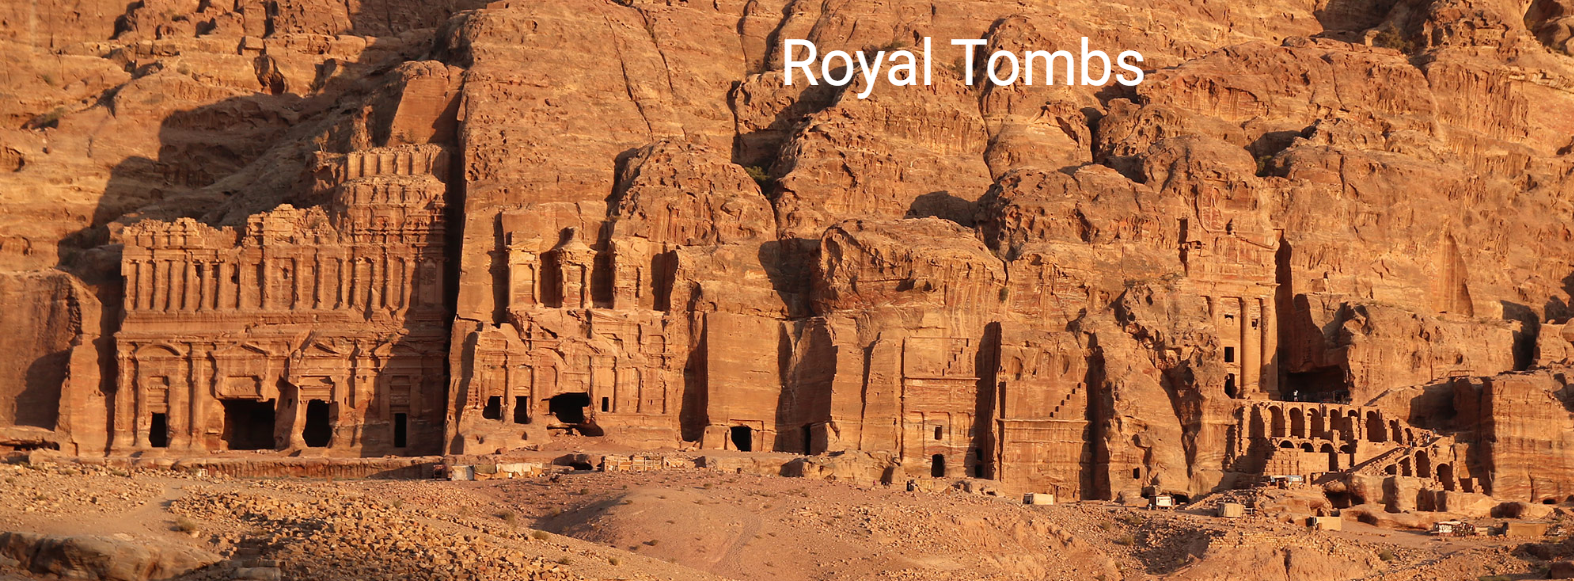 Royal-Tombs-Petra